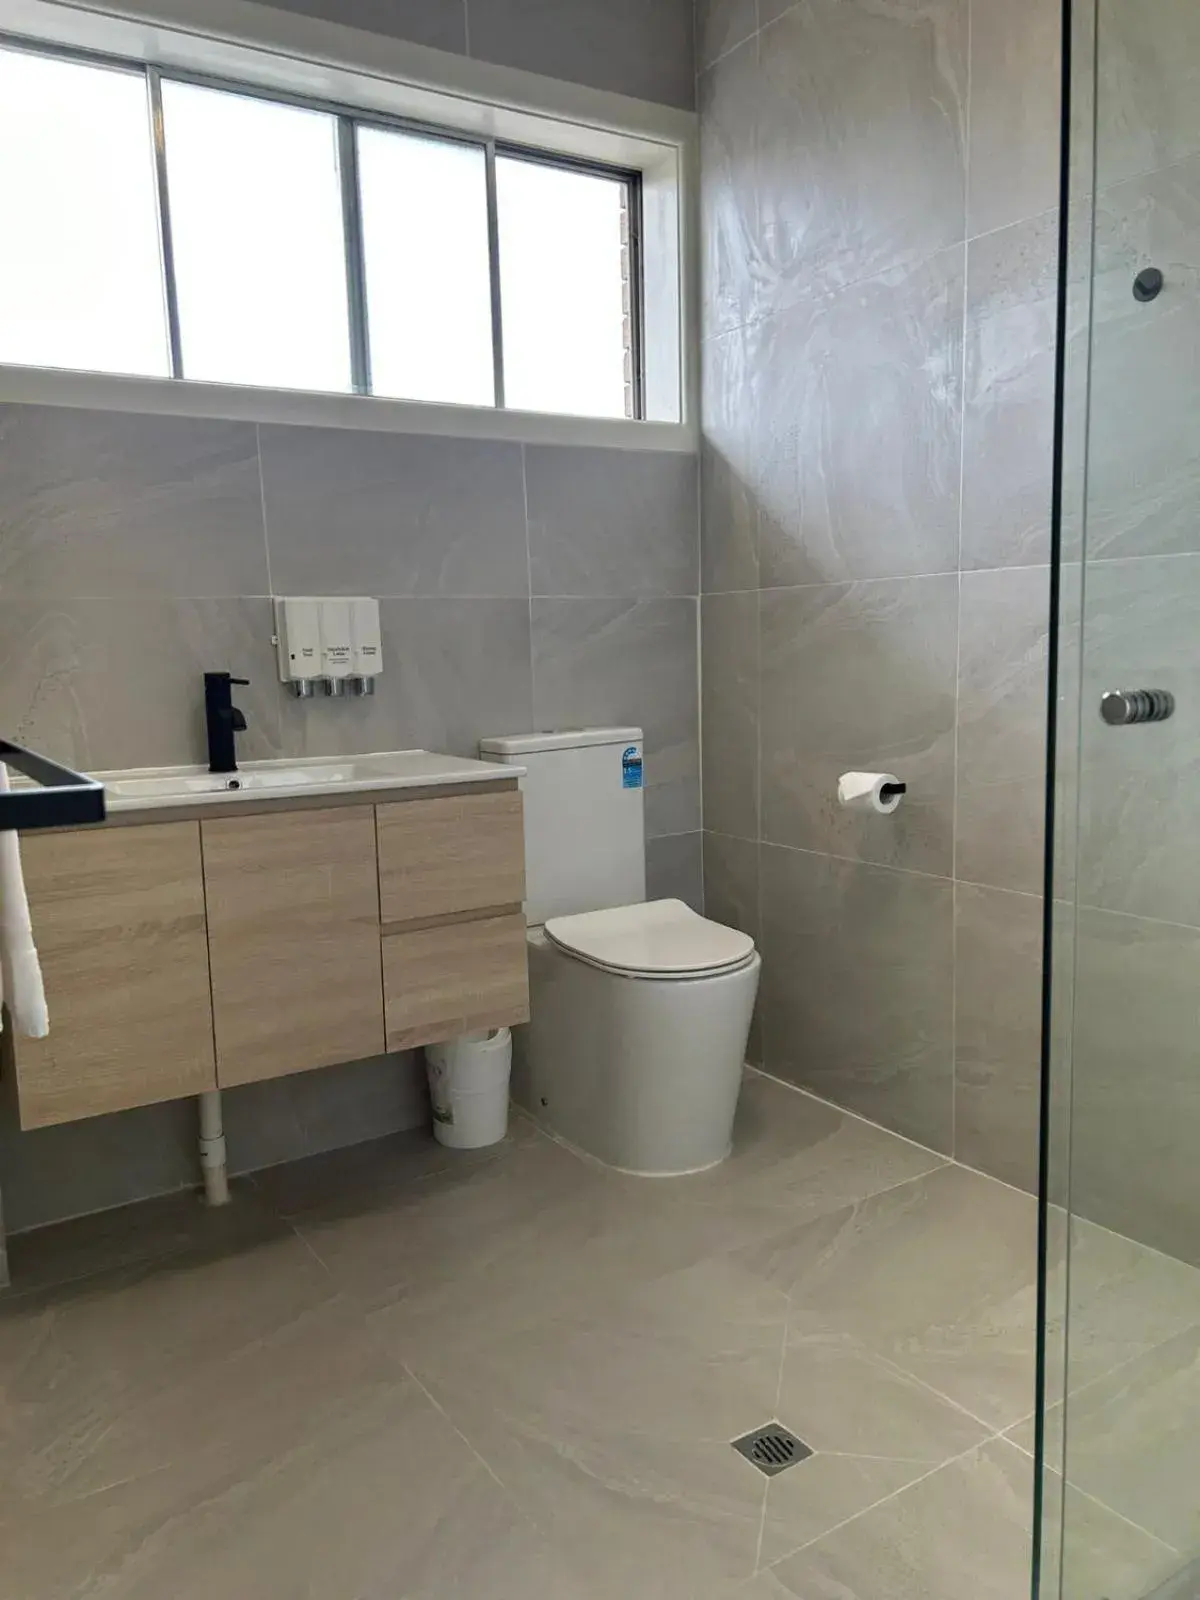 Toilet, Bathroom in Country Lodge Motor Inn